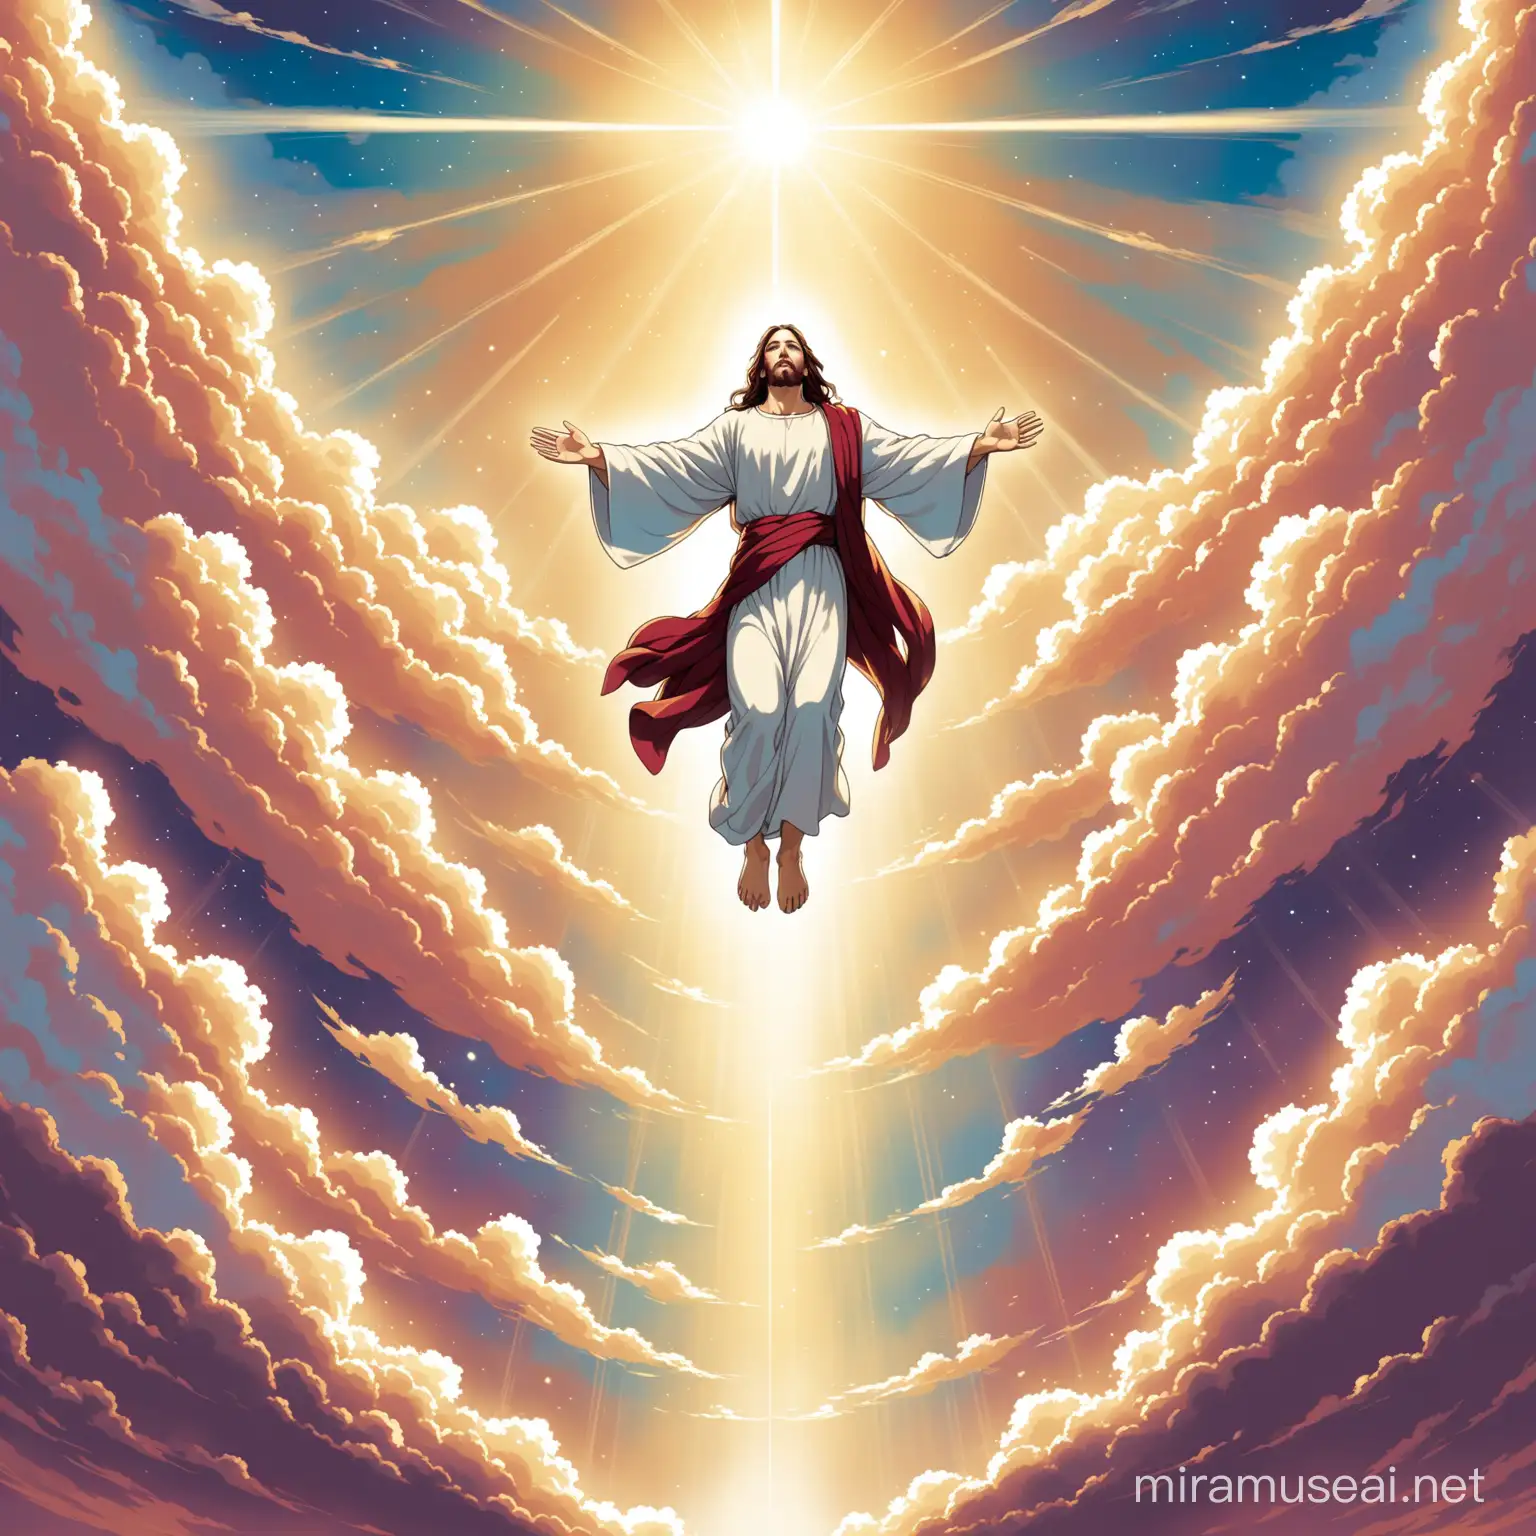 Divine Ascension Jesus Rising into Heaven